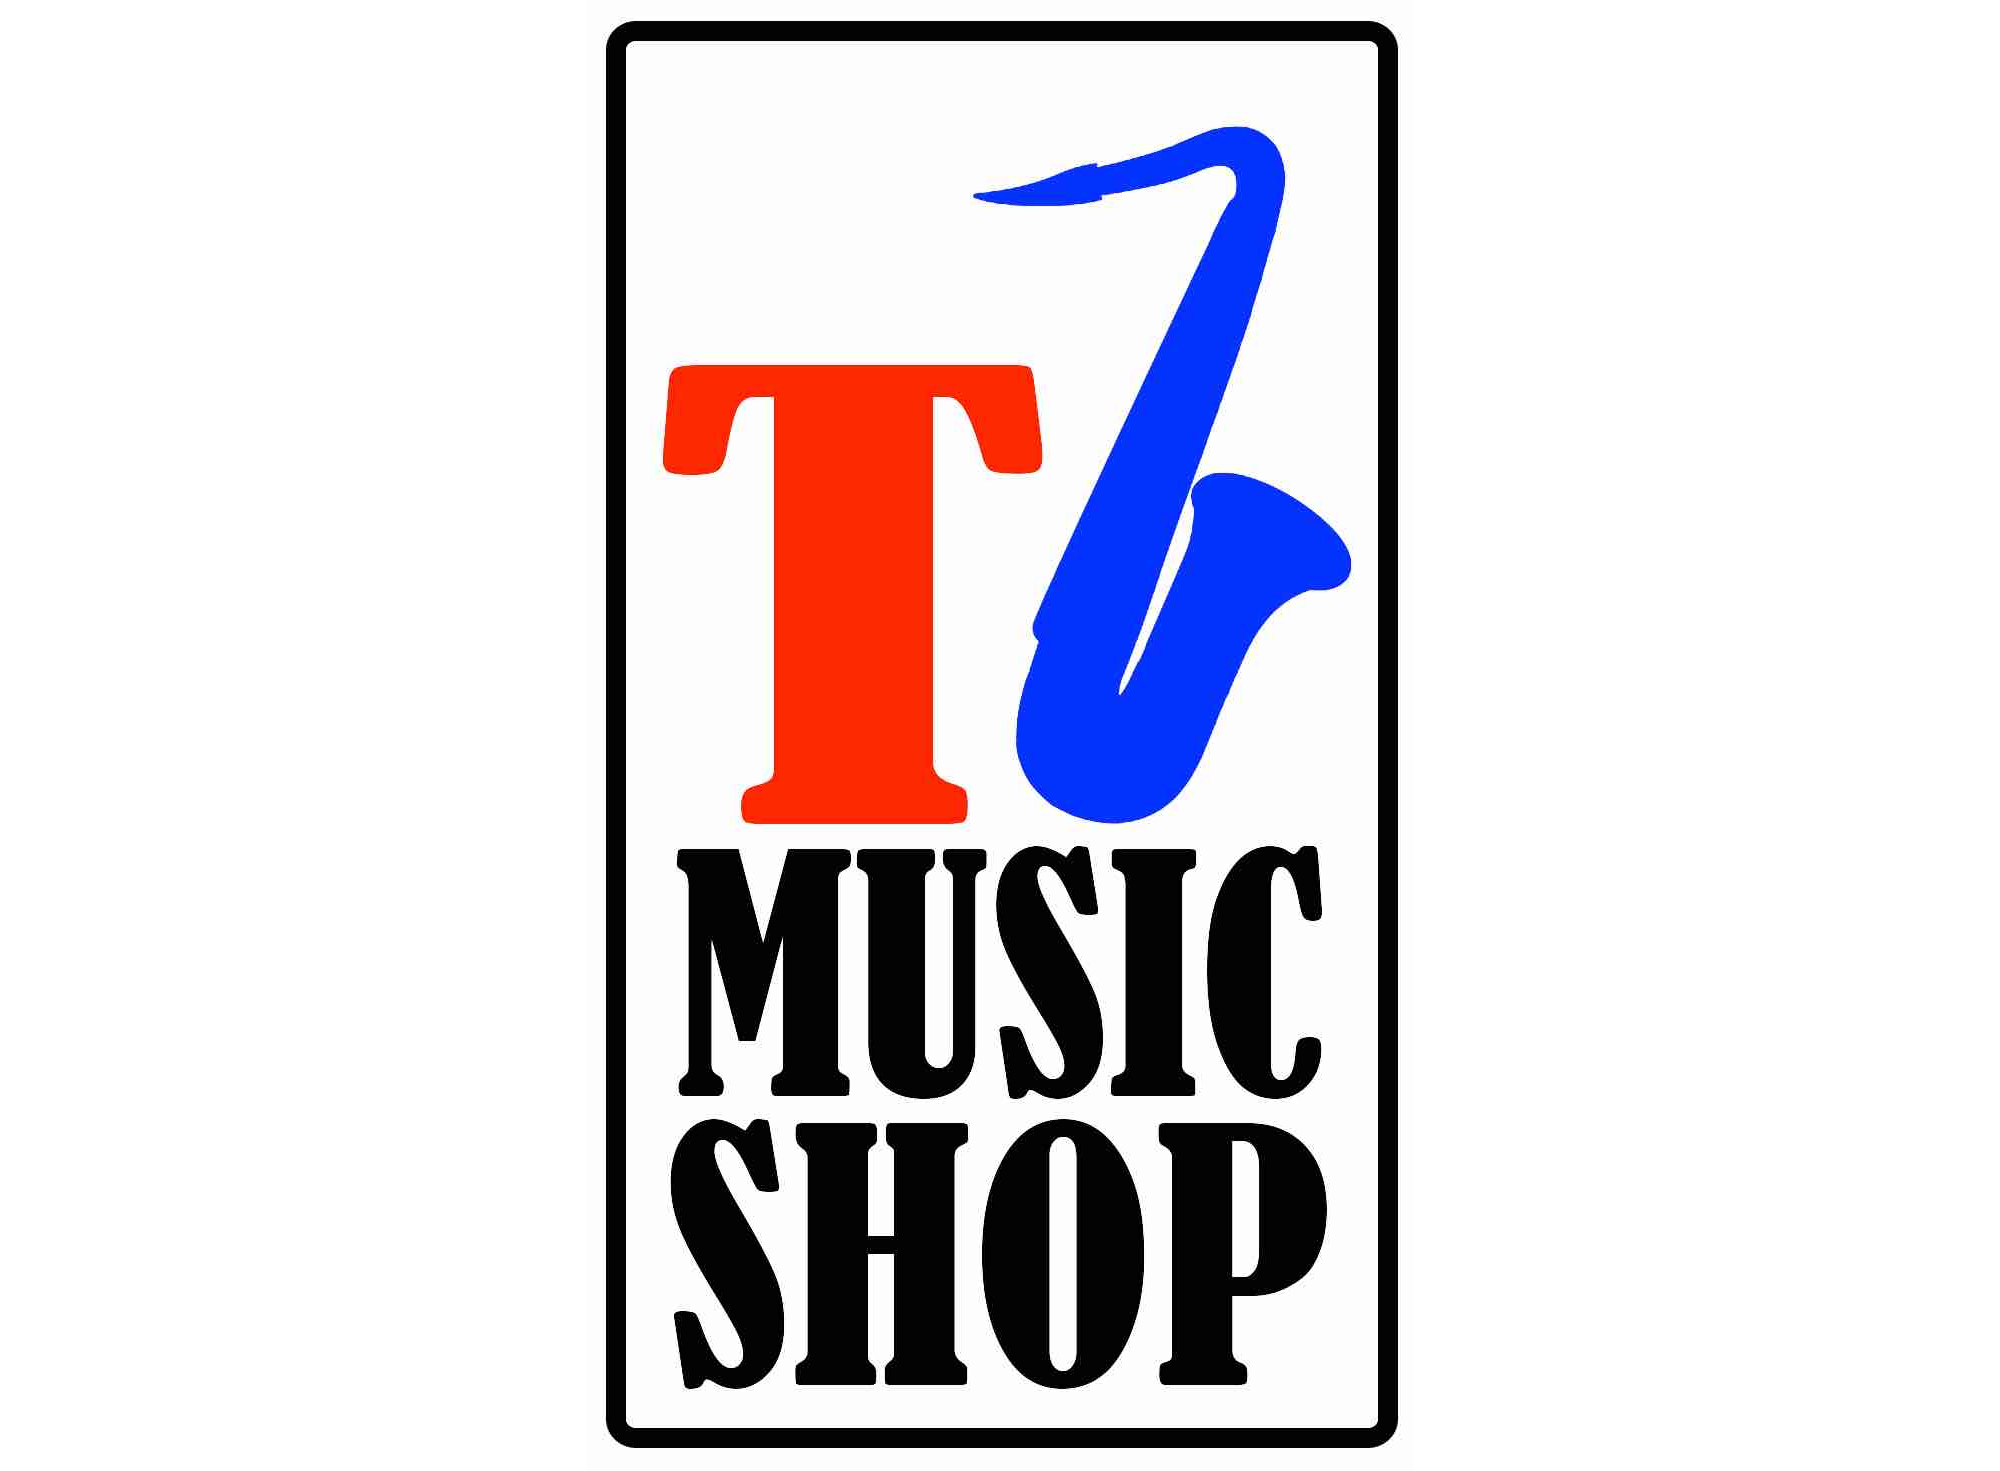 Ticino Music Shop SAGL è partner della Scuola di Batteria DrumSpot